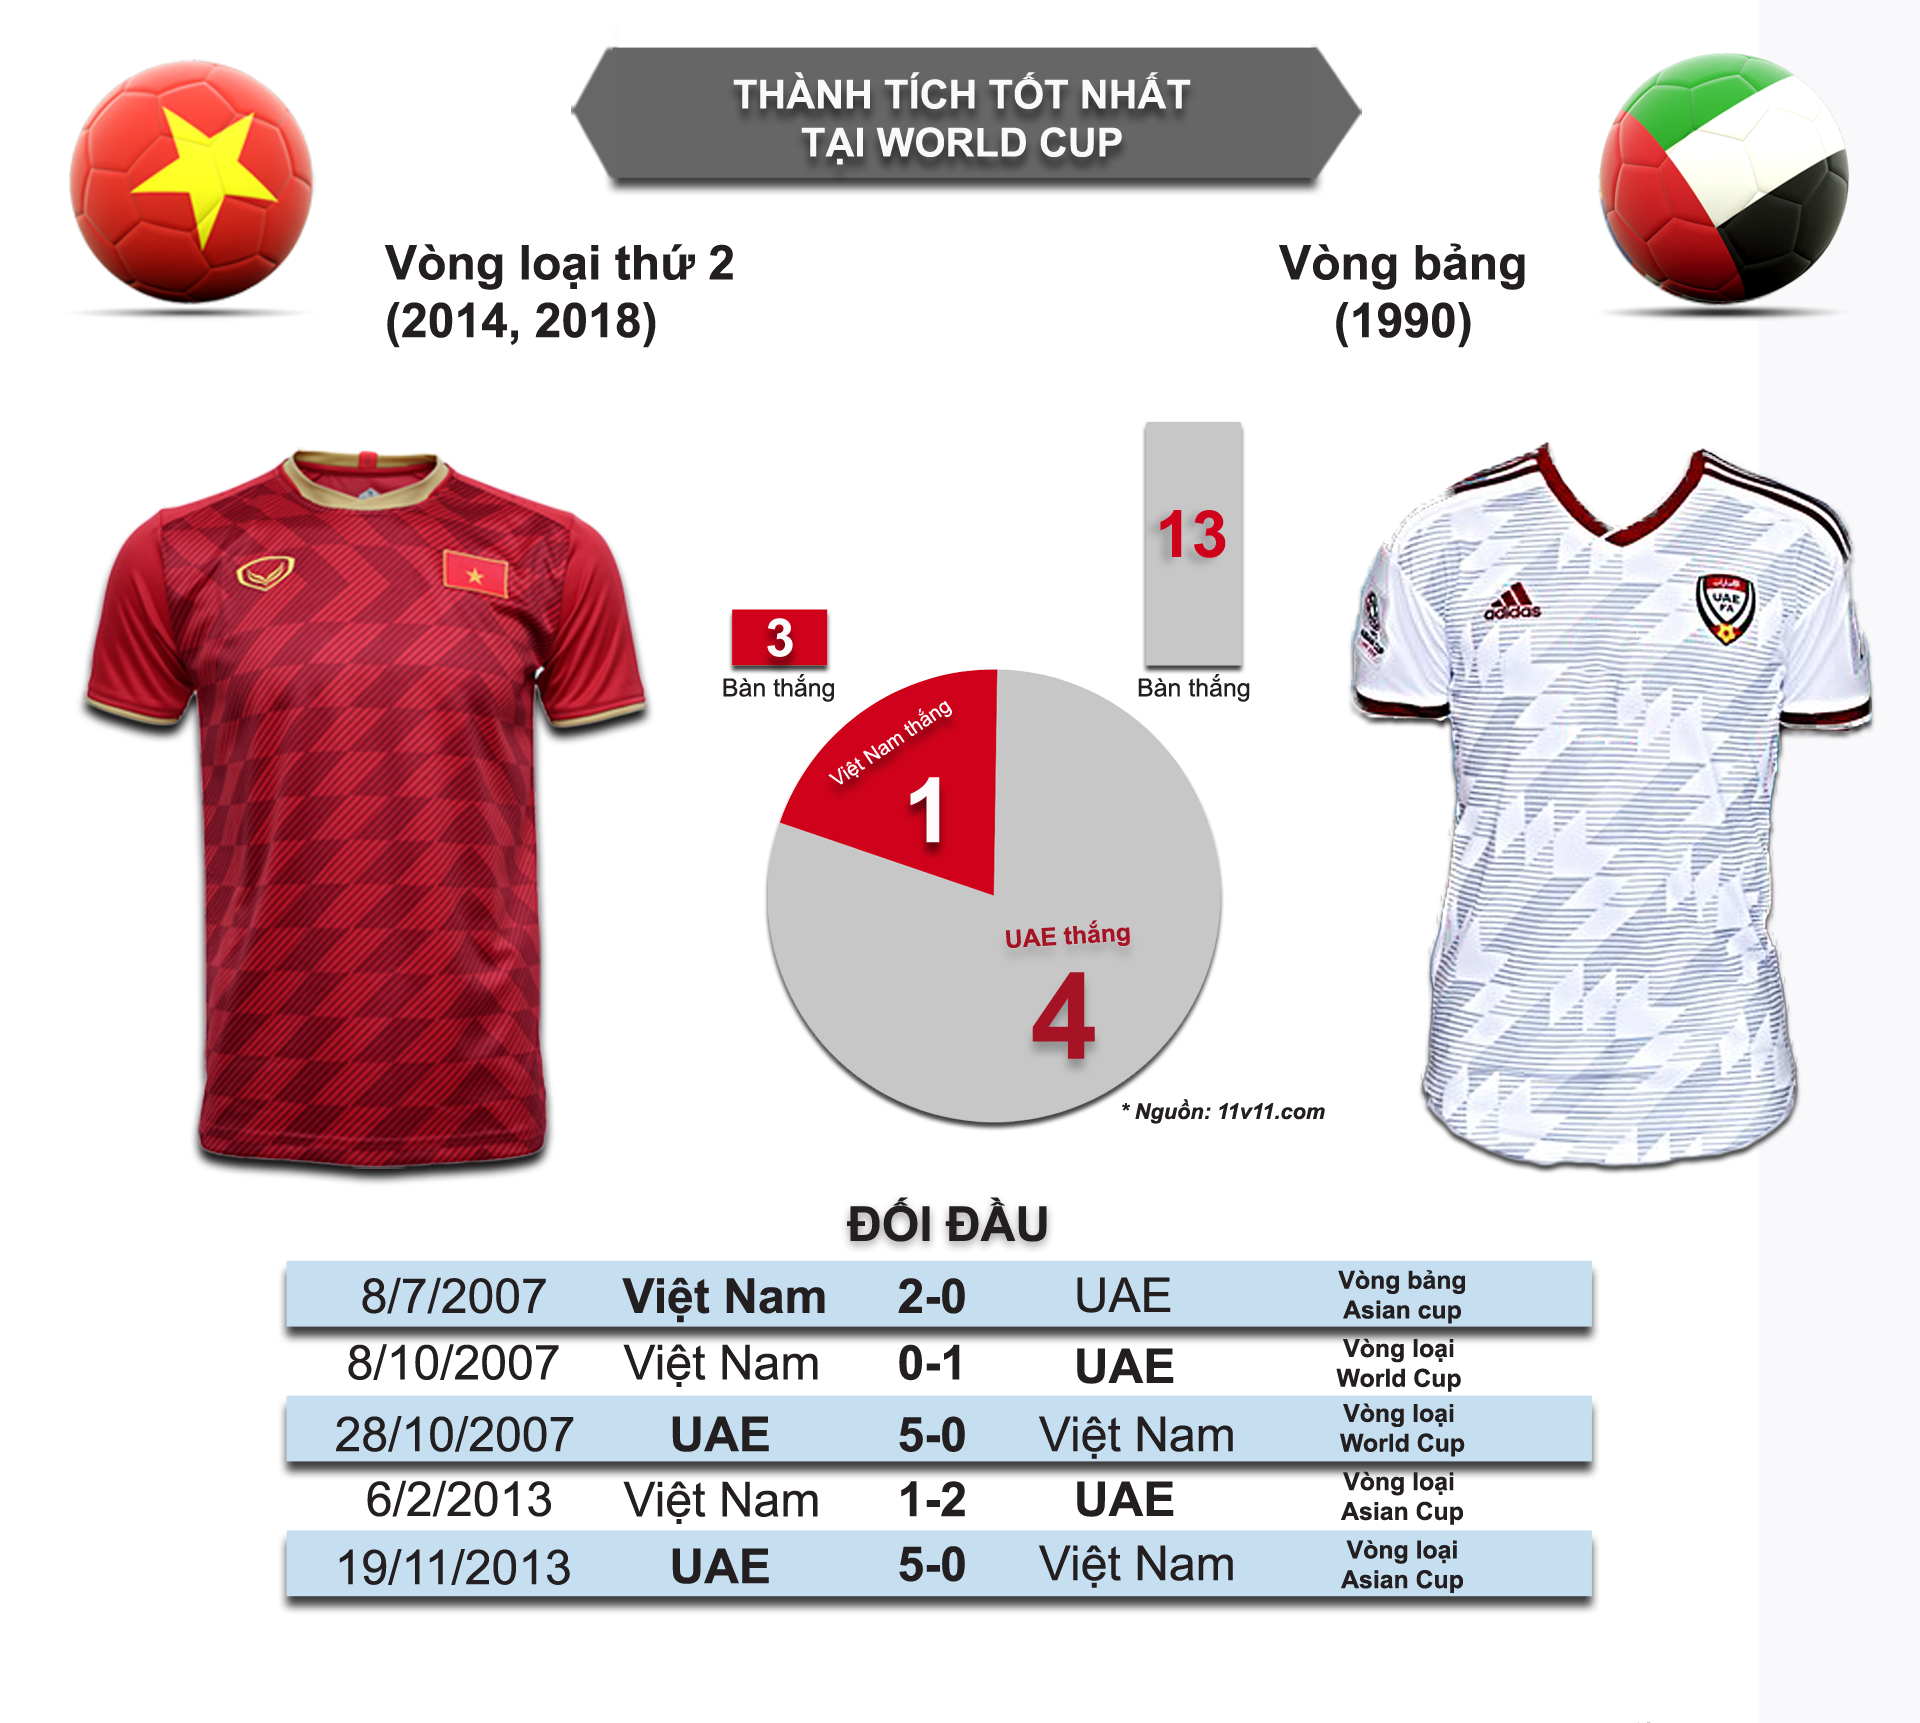 Nhận định bóng đá Việt Nam - UAE: Hừng hực khí thế tái lập siêu kỳ tích 2007 (Vòng loại World Cup) - 5